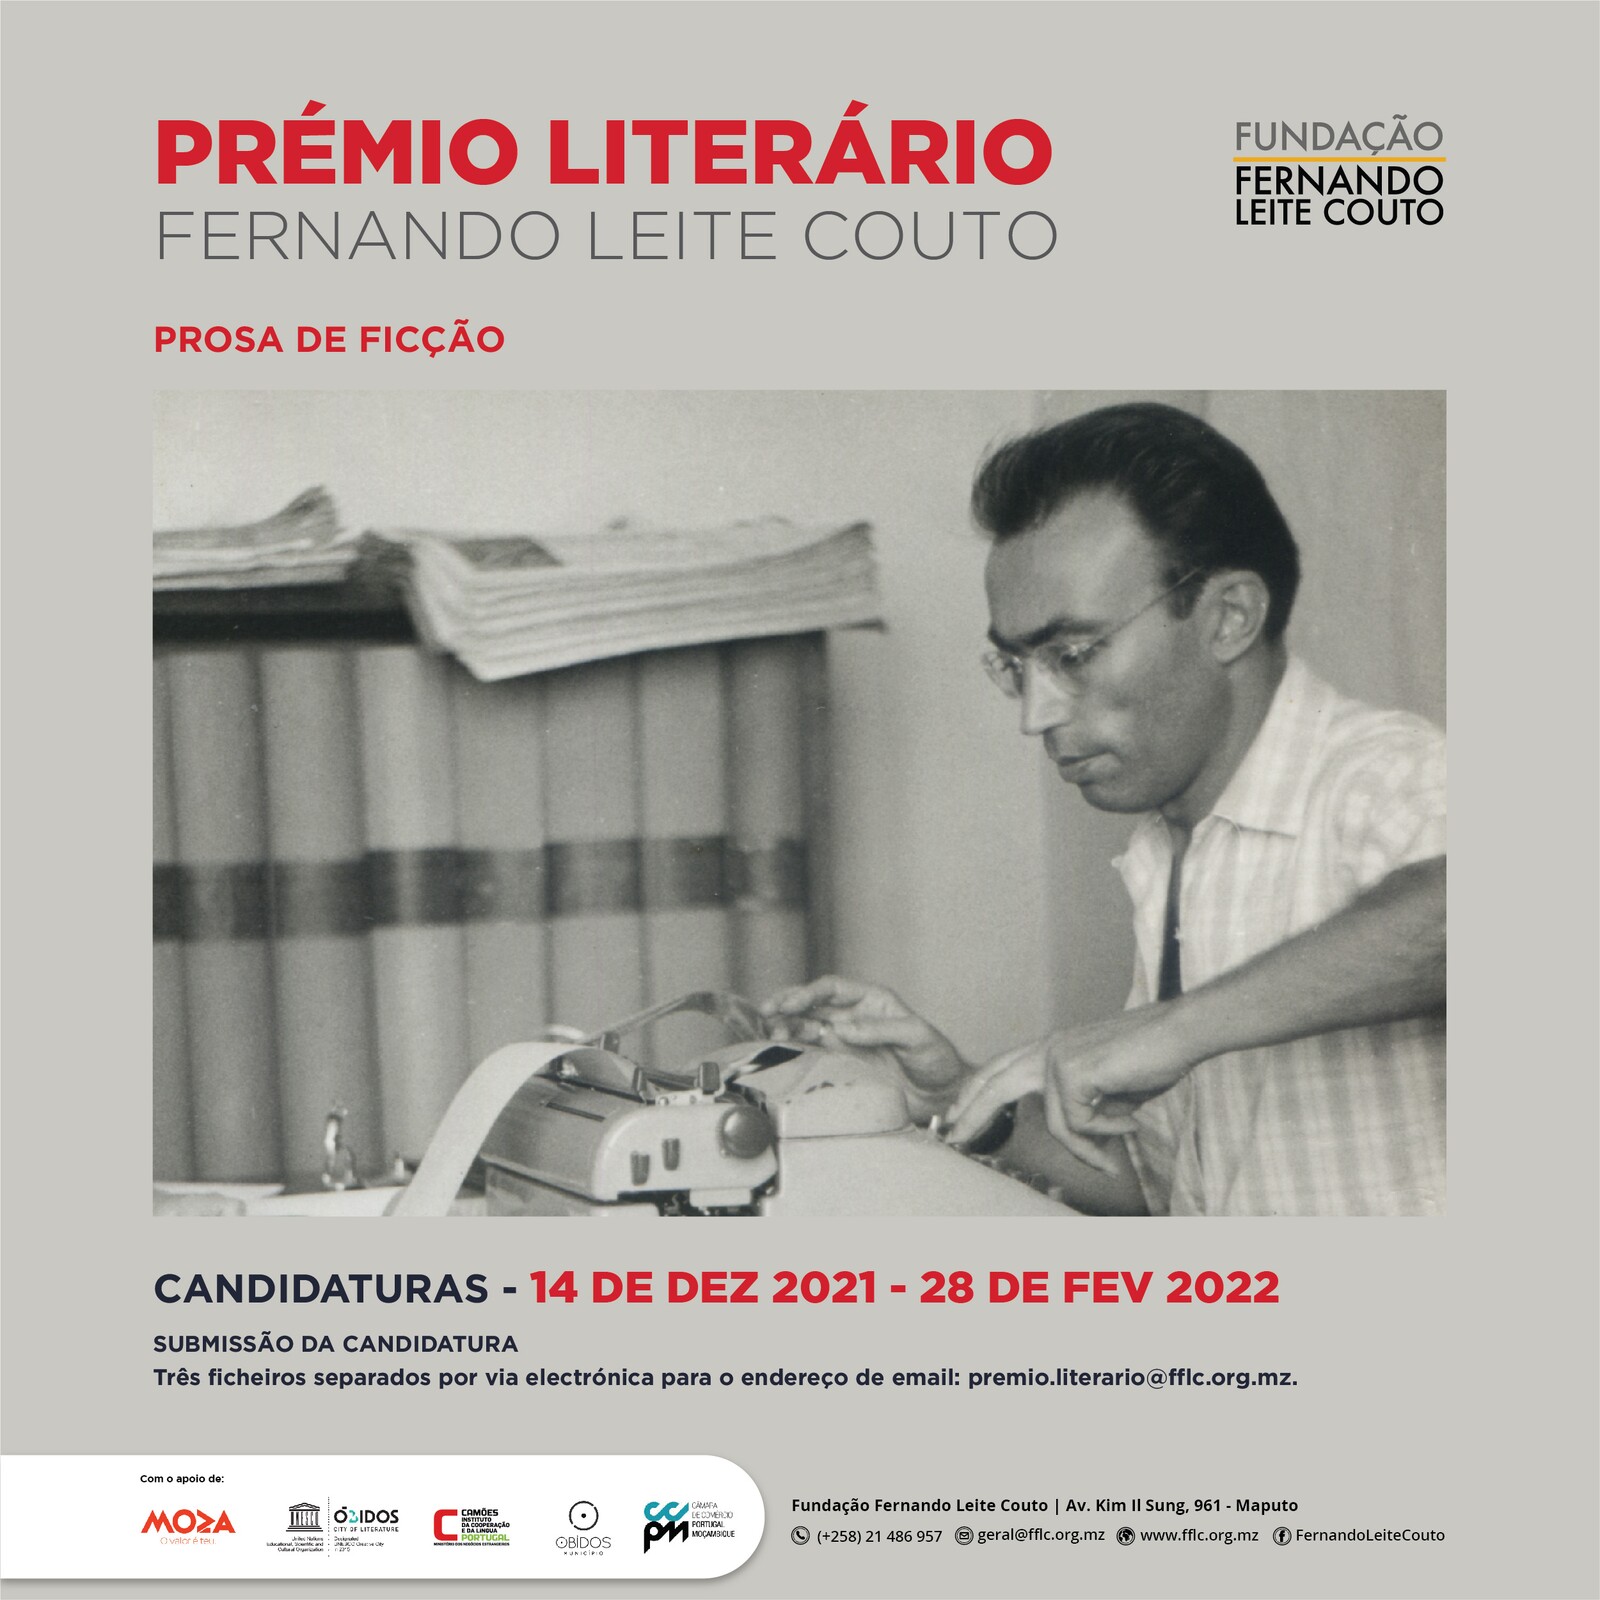 Município de Óbidos no lançamento do Prémio Literário Fernando Leite Couto